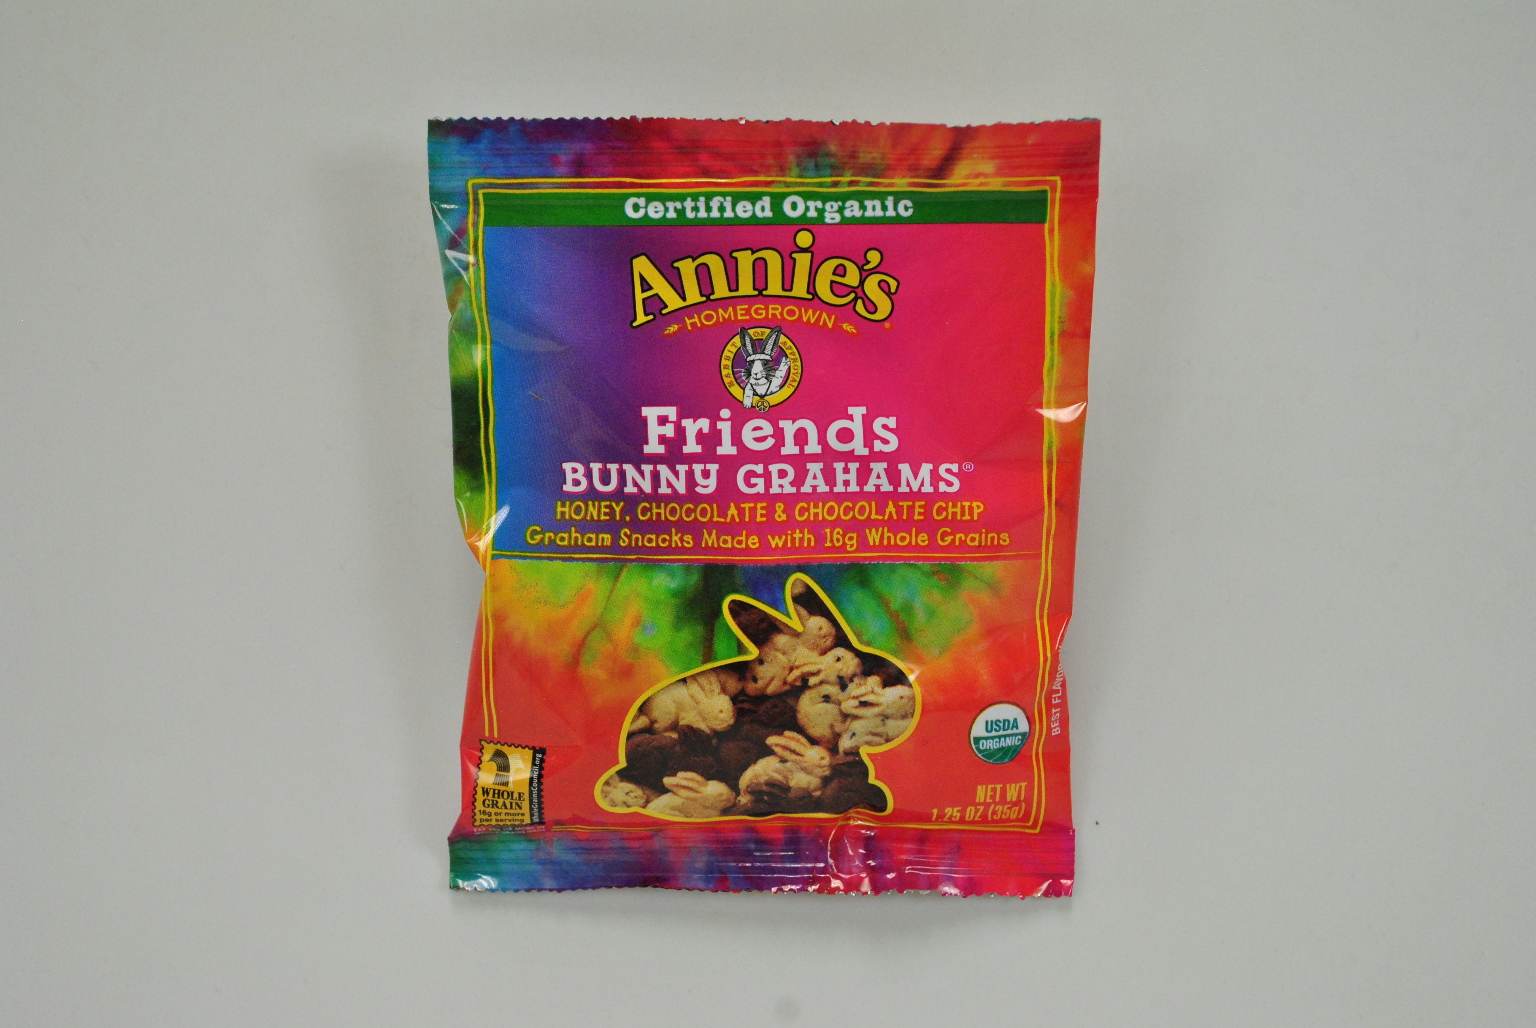 Wholesale Annies(R) Bunny Grahams(R) Friends(100xalt=